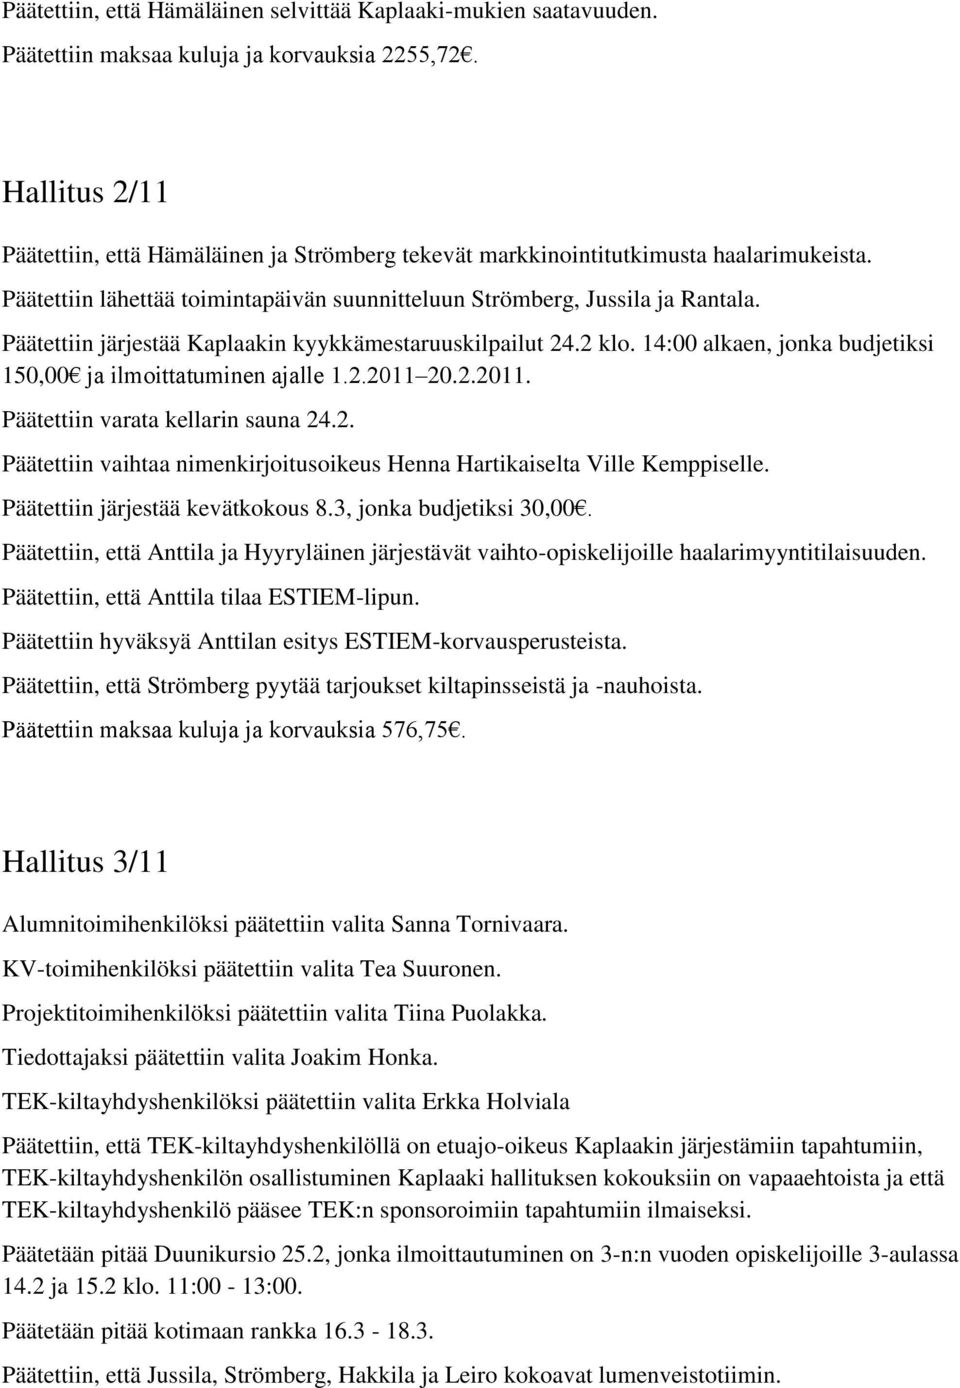 Päätettiin järjestää Kaplaakin kyykkämestaruuskilpailut 24.2 klo. 14:00 alkaen, jonka budjetiksi 150,00 ja ilmoittatuminen ajalle 1.2.2011 20.2.2011. Päätettiin varata kellarin sauna 24.2. Päätettiin vaihtaa nimenkirjoitusoikeus Henna Hartikaiselta Ville Kemppiselle.